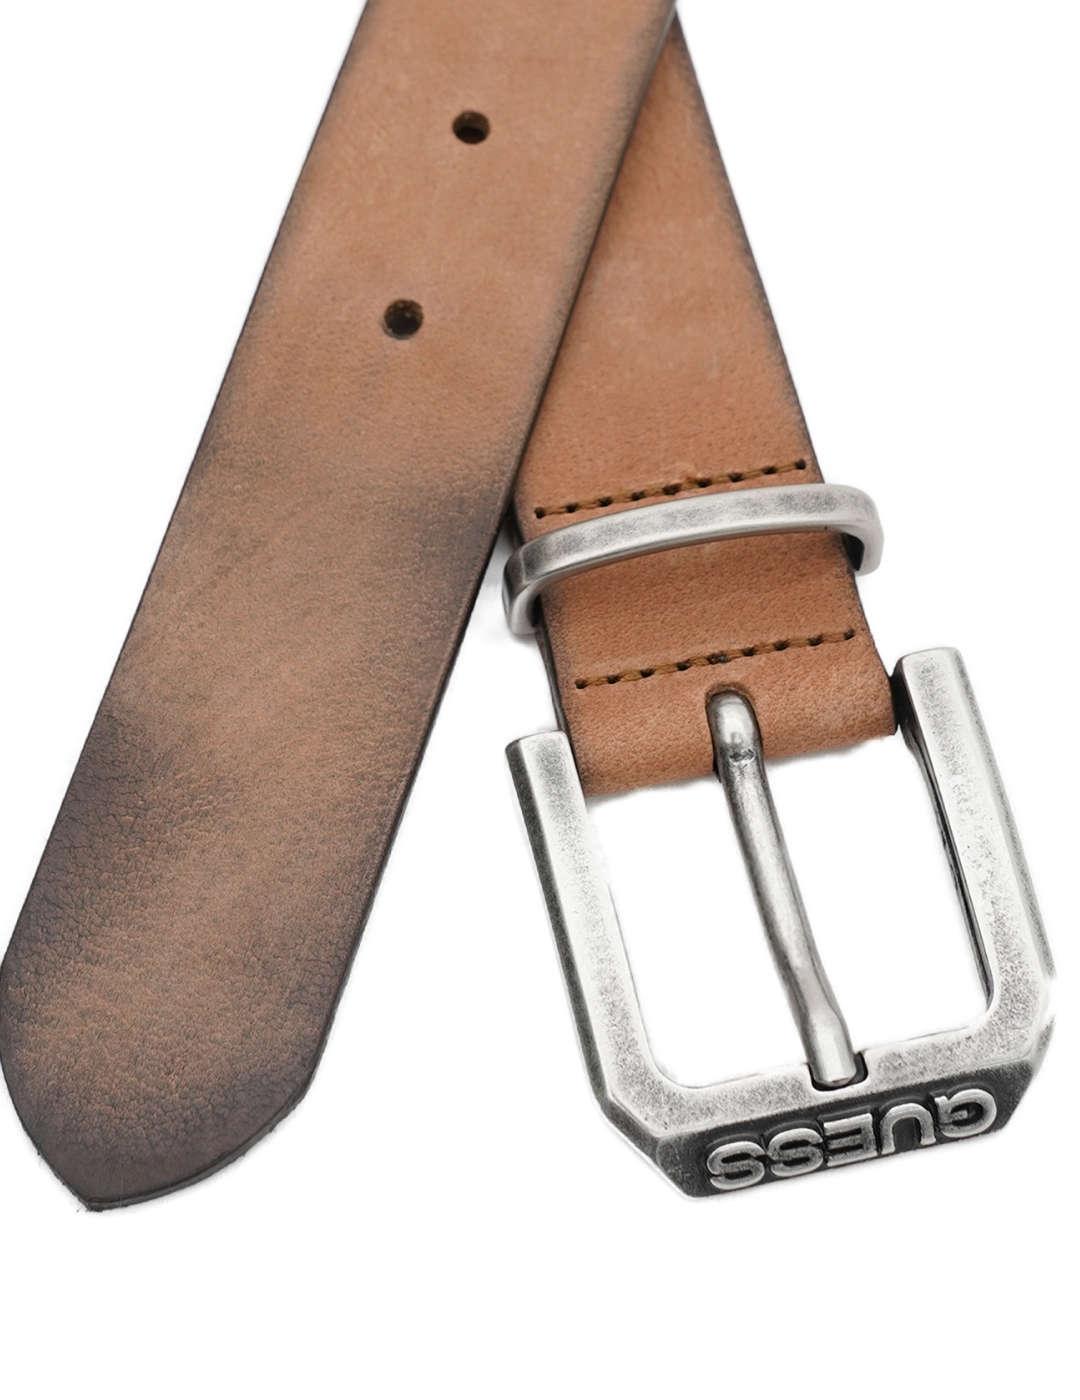 Cinturón Guess marrón coñac hebilla en relieve para hombre